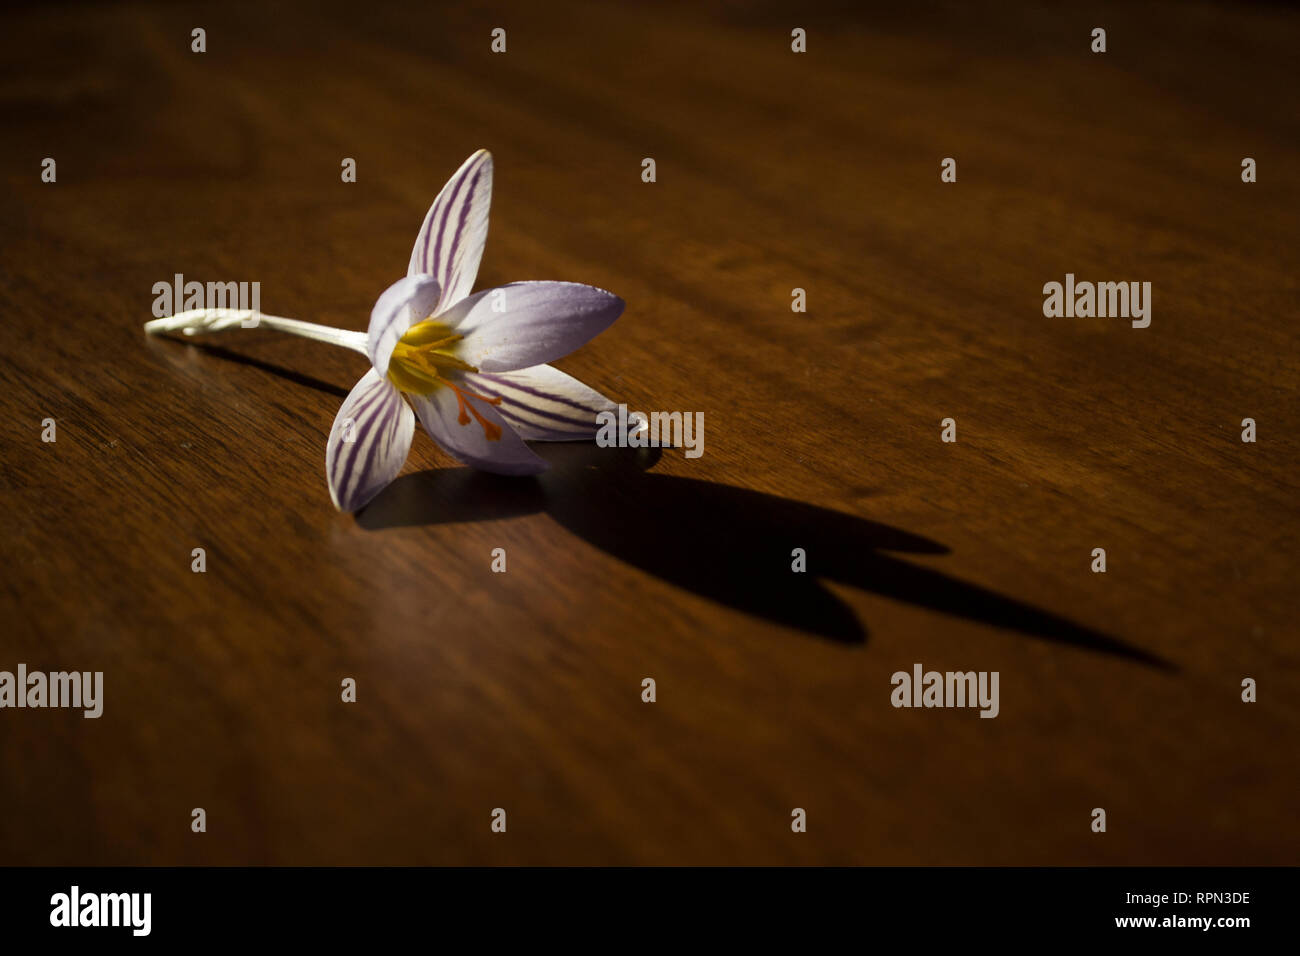 Crocus Blume auf dem hölzernen Tisch Stockfoto